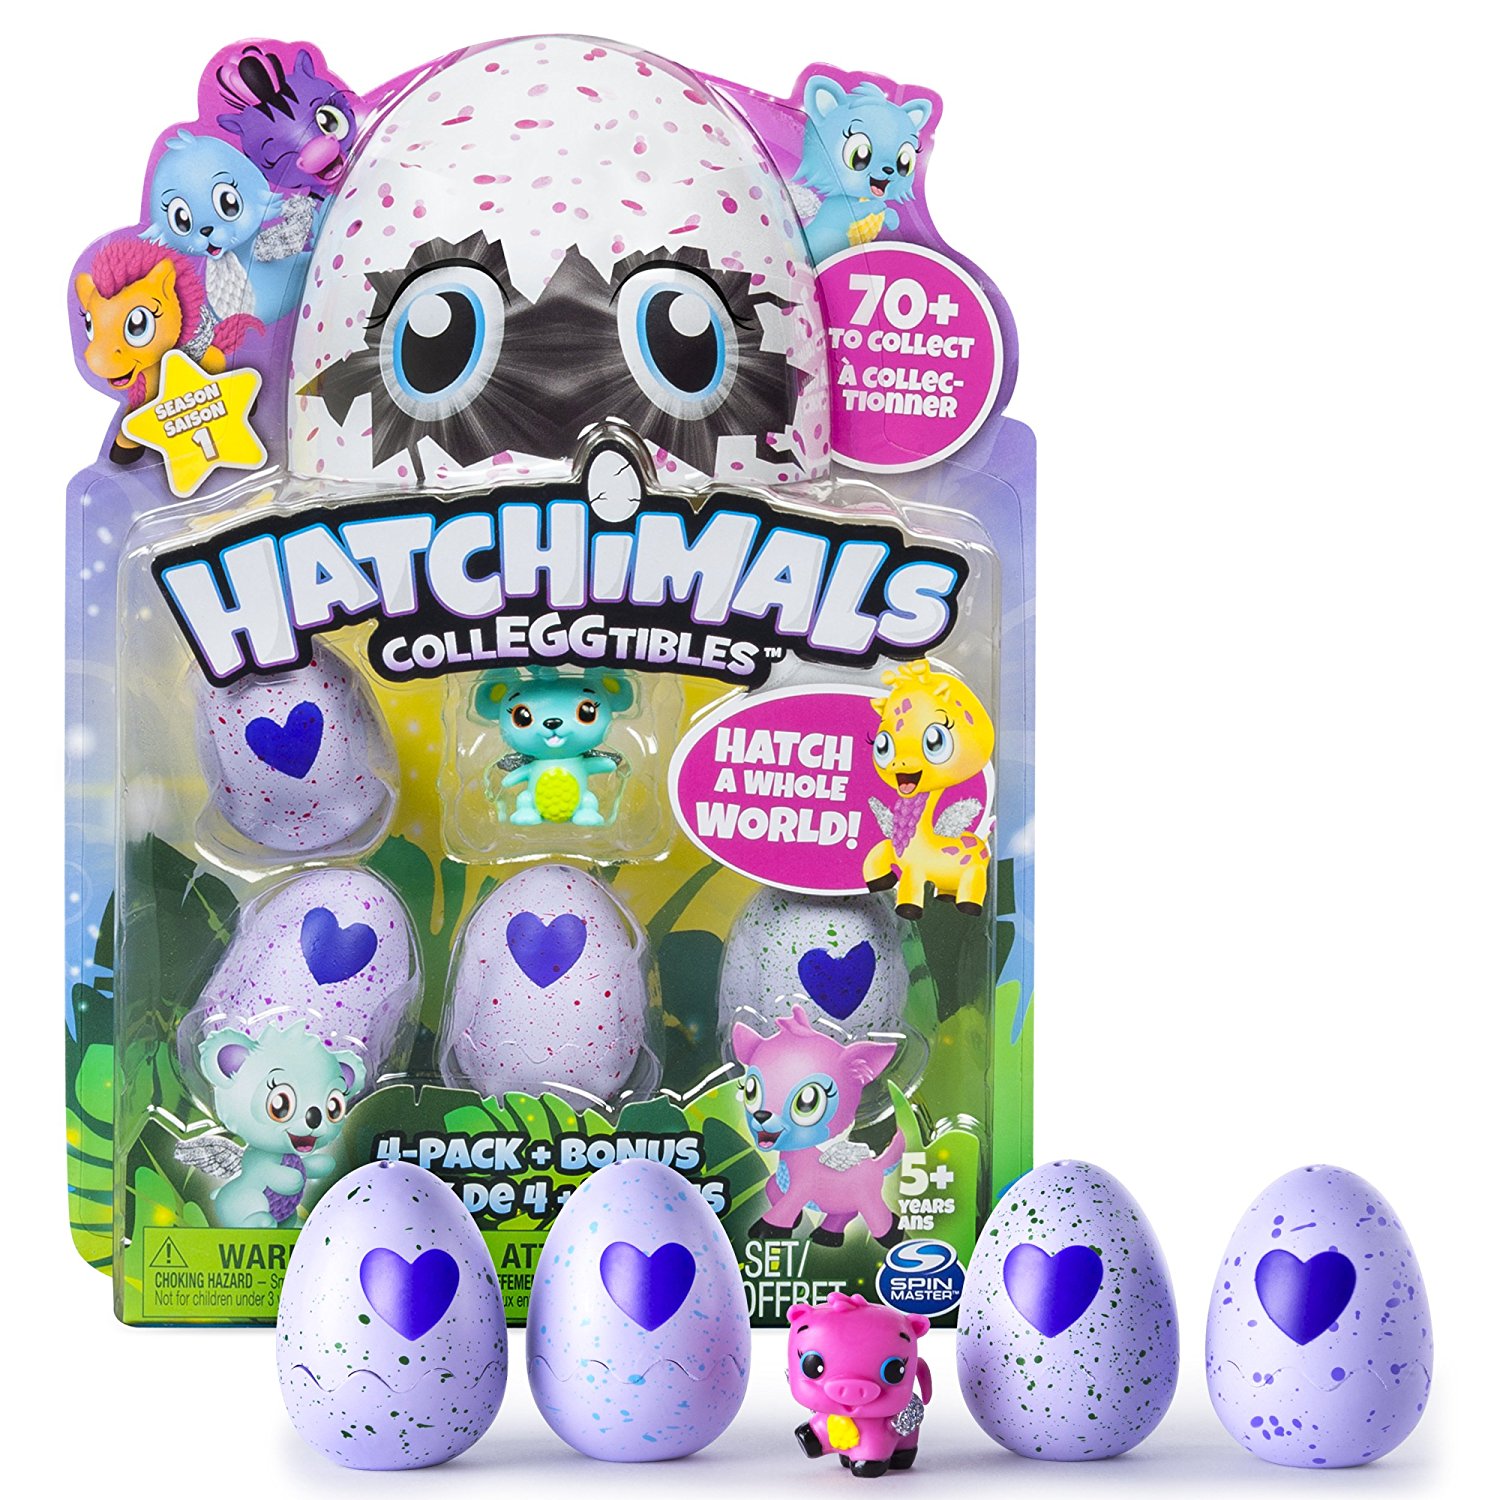 Hatchimals CollEGGtibles 4-Pack plus Bonus – Just $9.88!